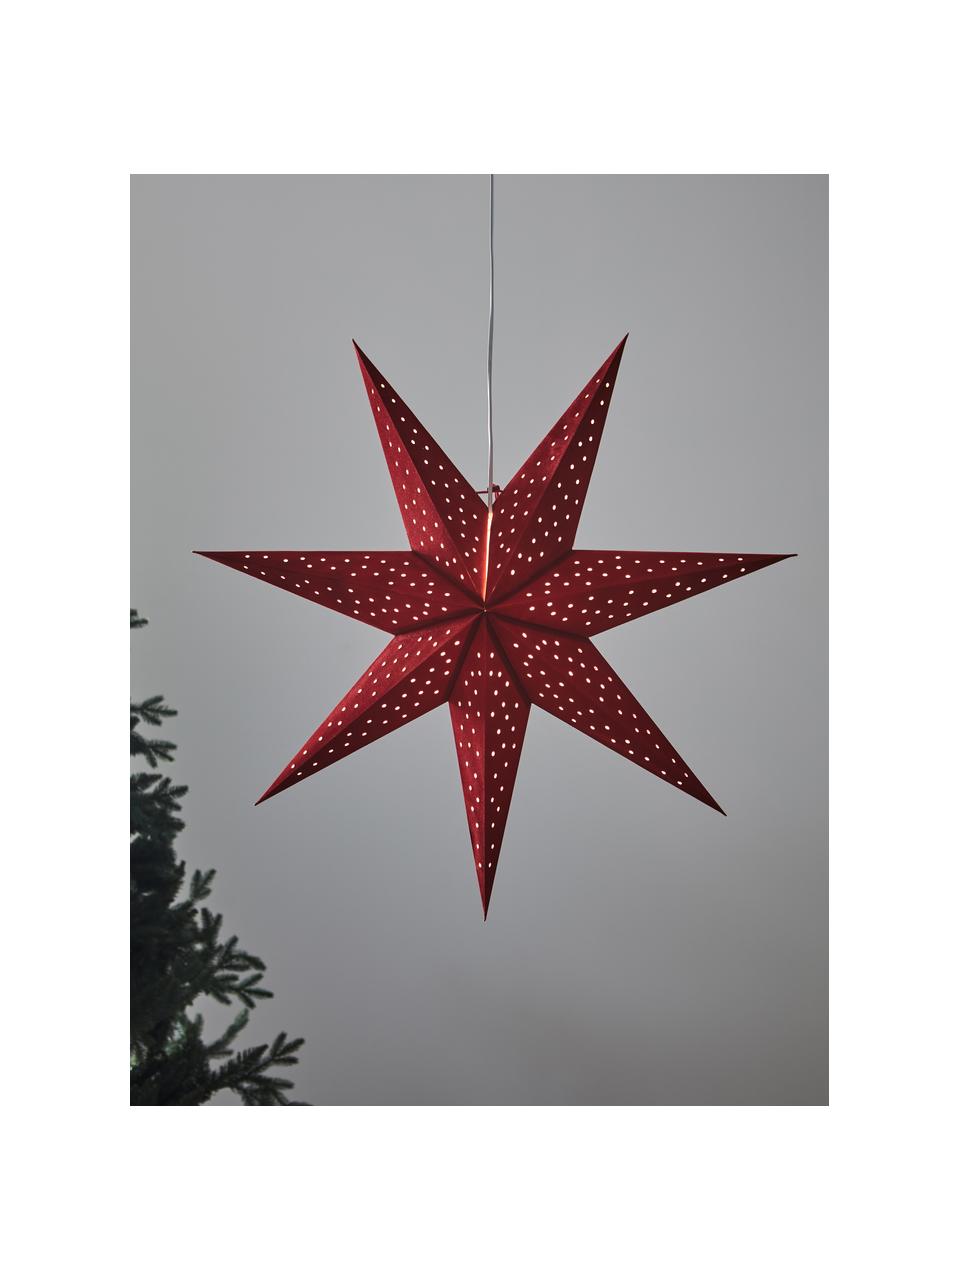 Samt-Weihnachtsstern Clara in Rot, Rot, Ø 75 cm